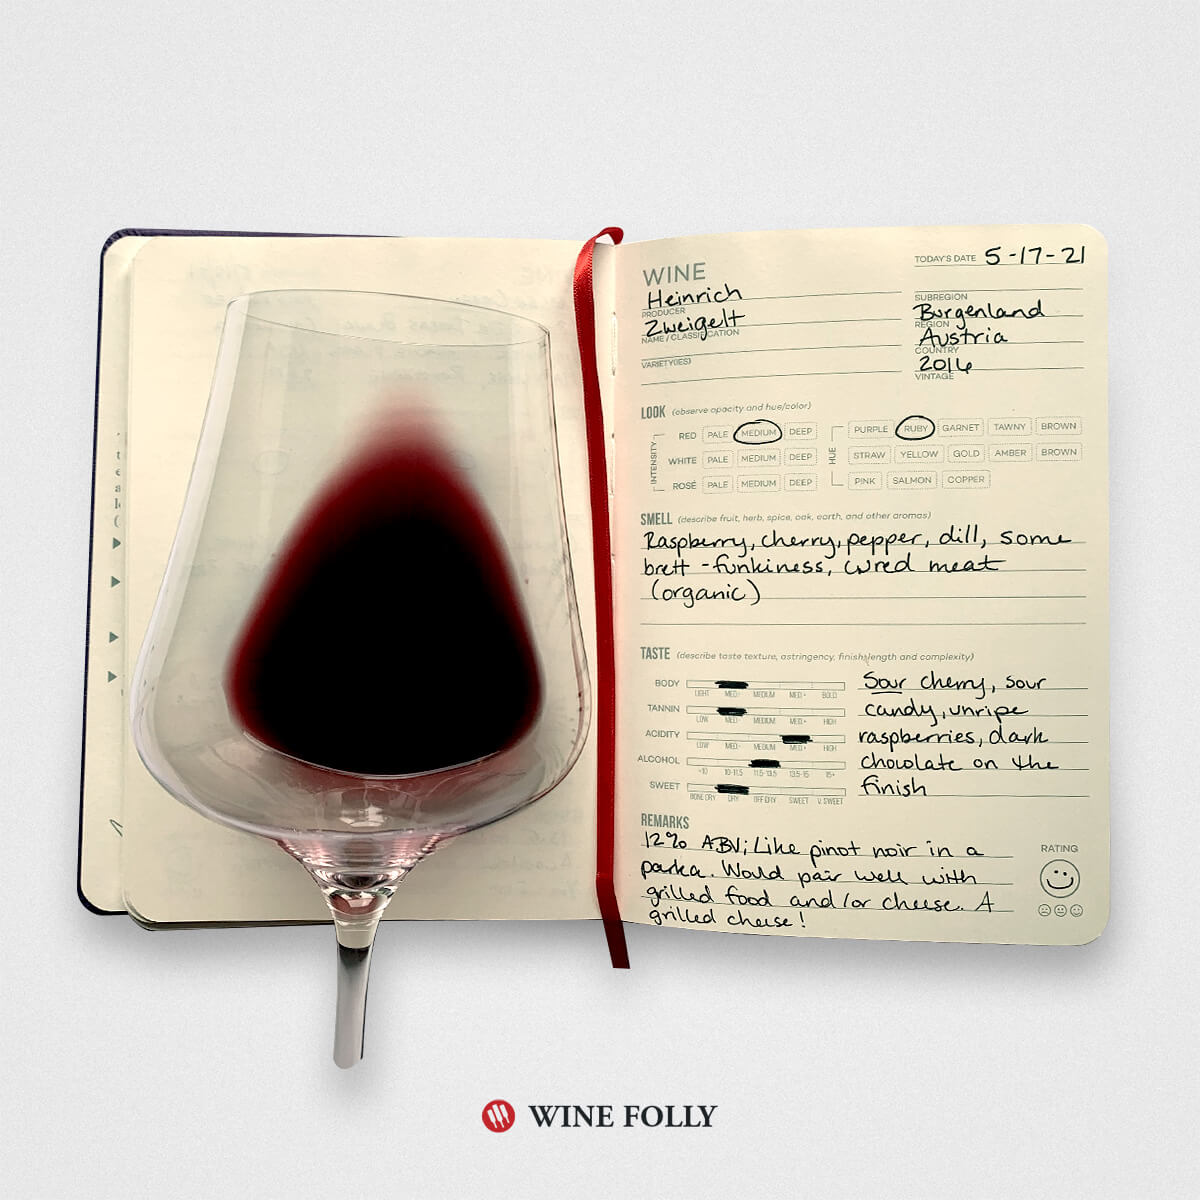 Wine tasting journal notes on Zweigelt